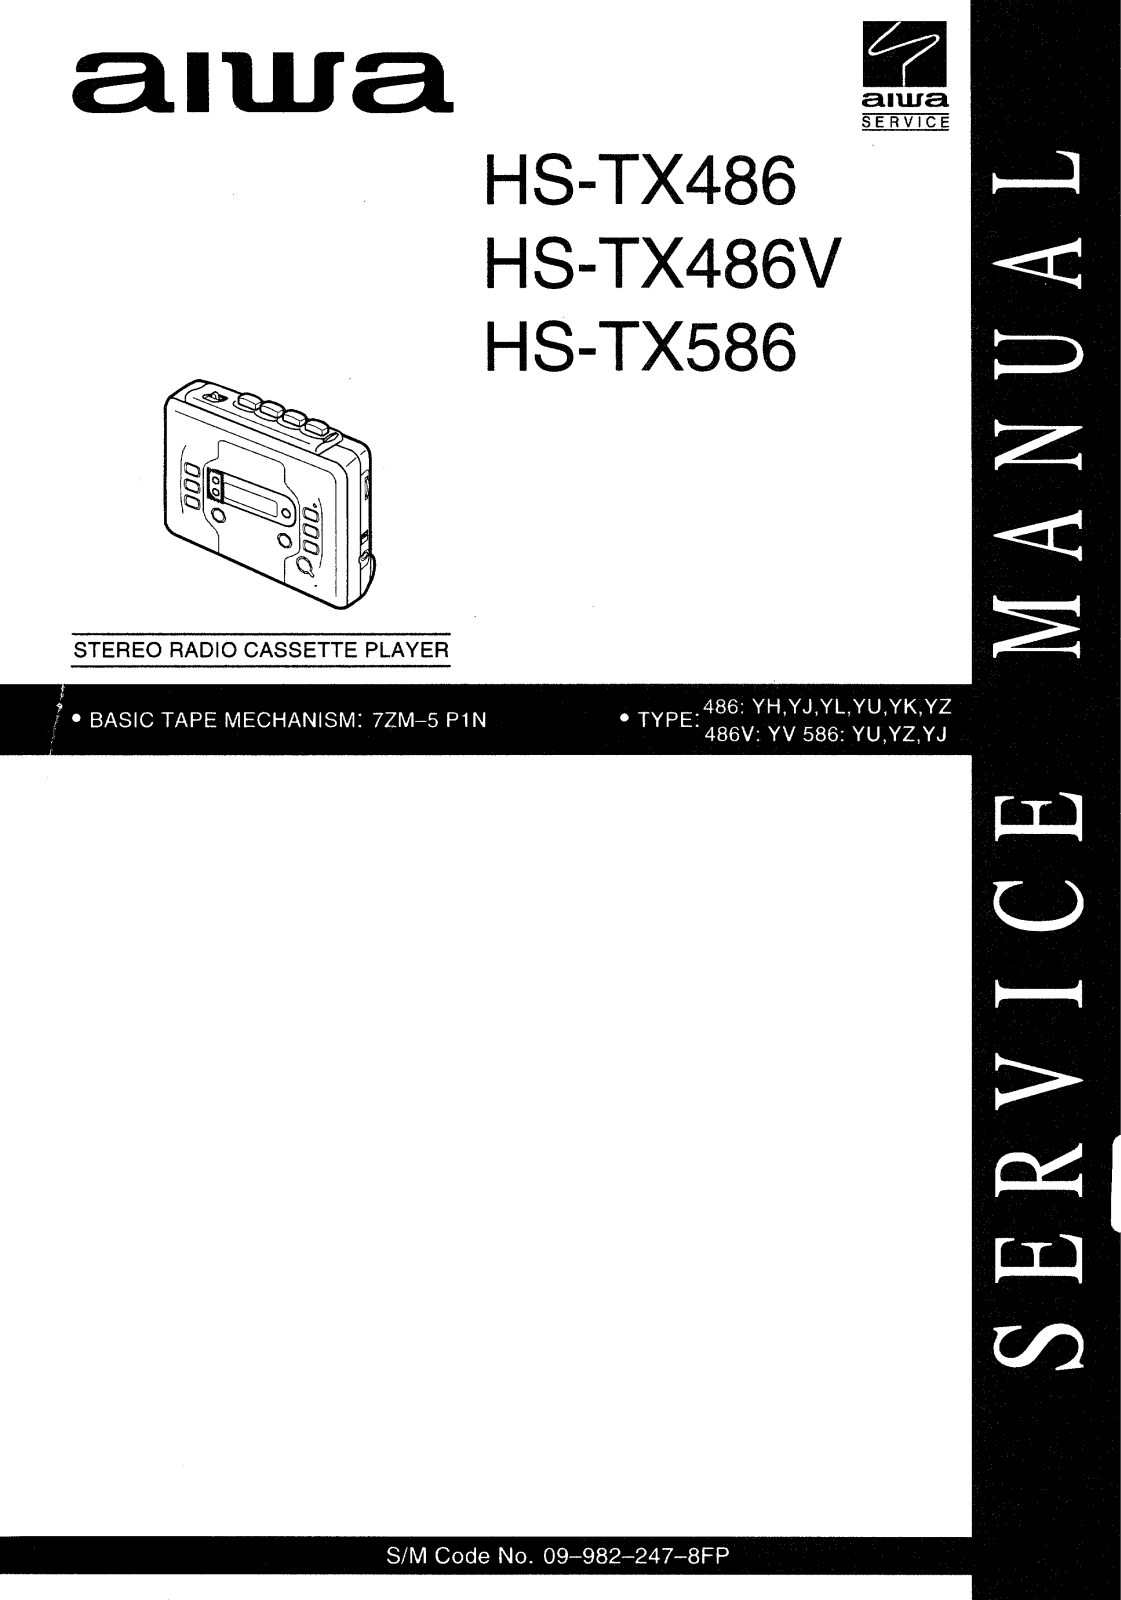 Aiwa HS-TX486, HS-TX486V, HS-TX586 Service Manual